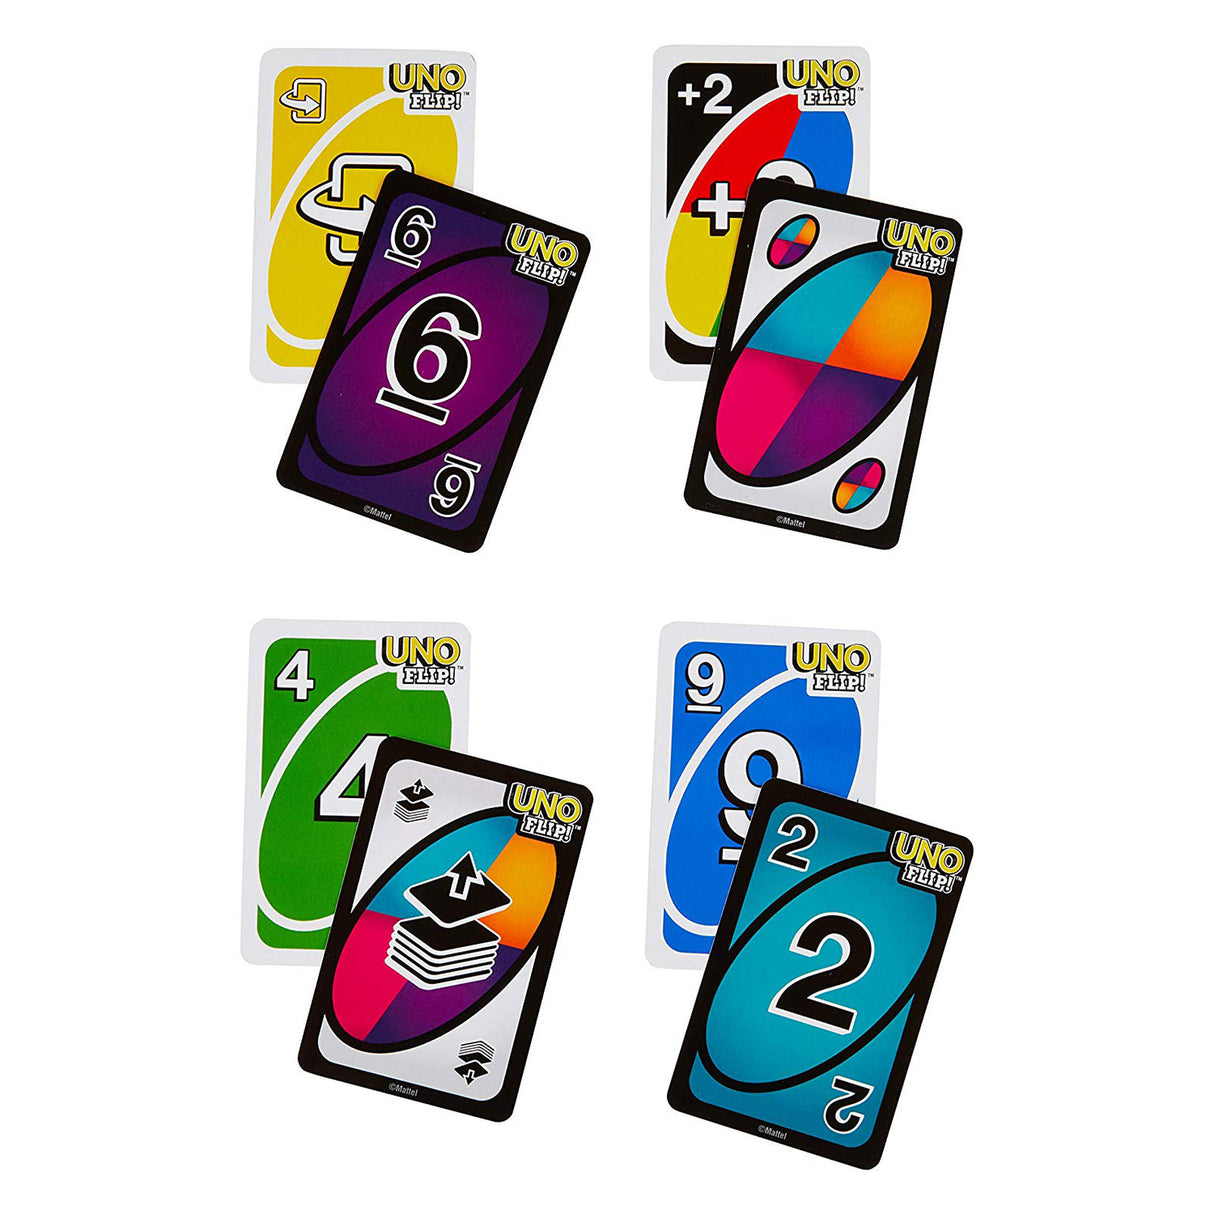 Uno Flip Card Game - Hobbytech Toys